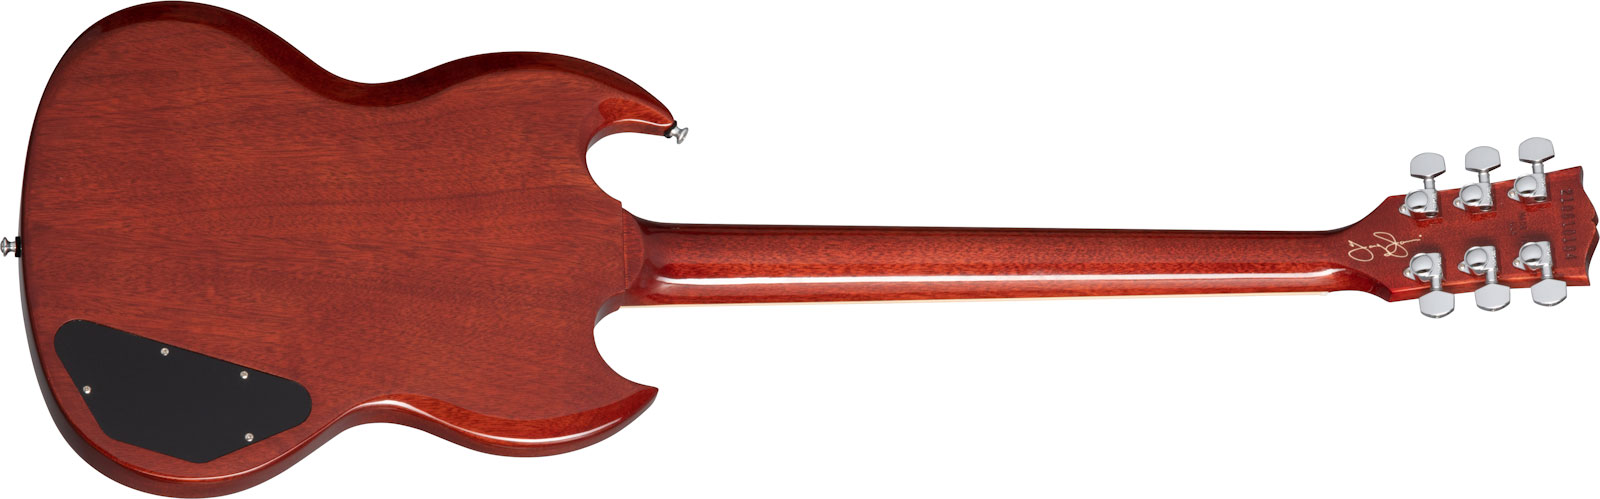 Gibson Sg Tony Iommi Special Lh Gaucher Signature 2p90 Ht Rw - Vintage Cherry - Linkshandige elektrische gitaar - Variation 1